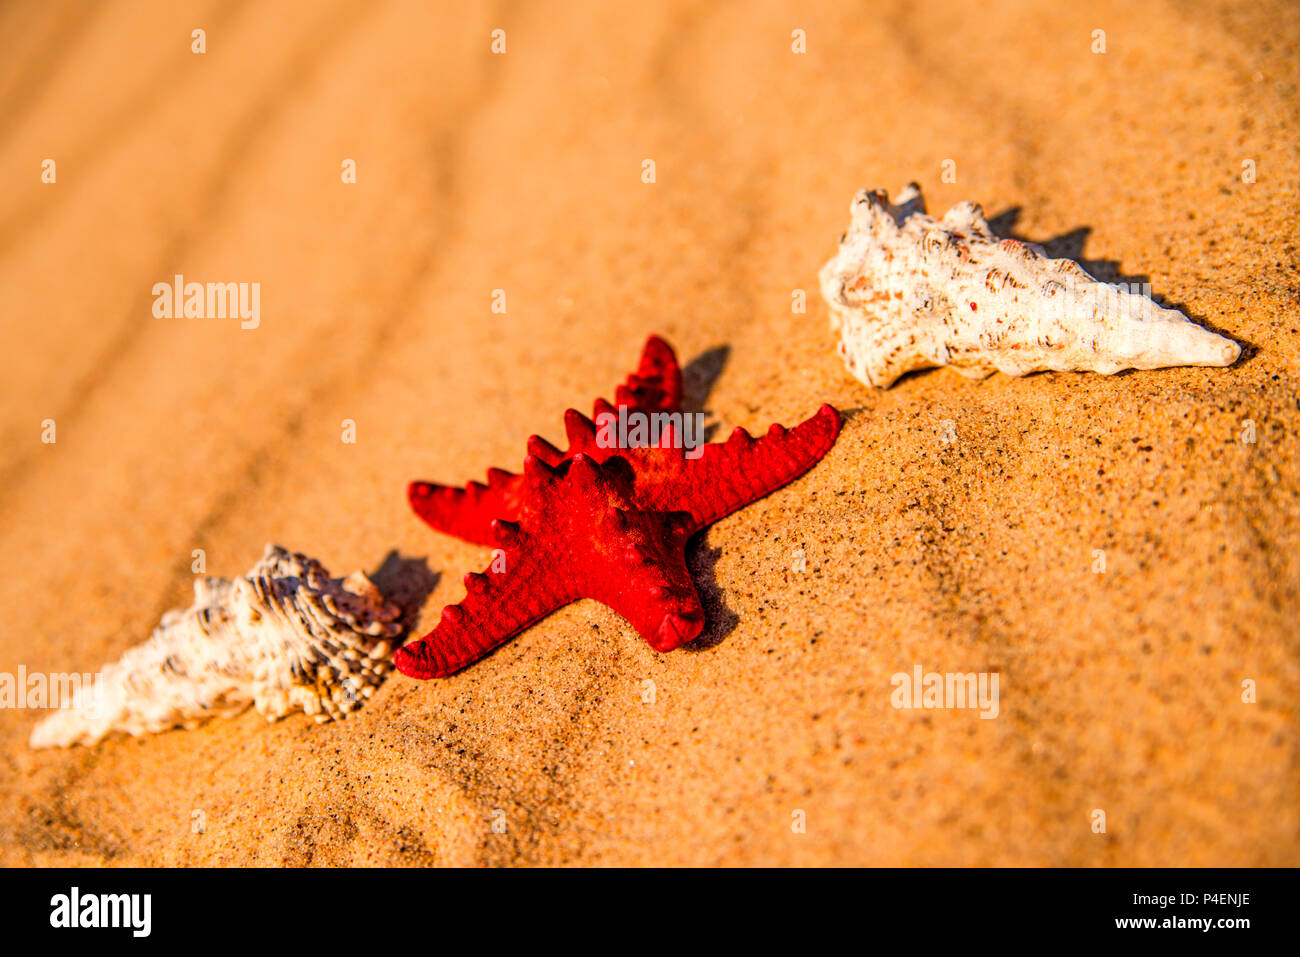 Sea star on a sandy beach Stock Photo